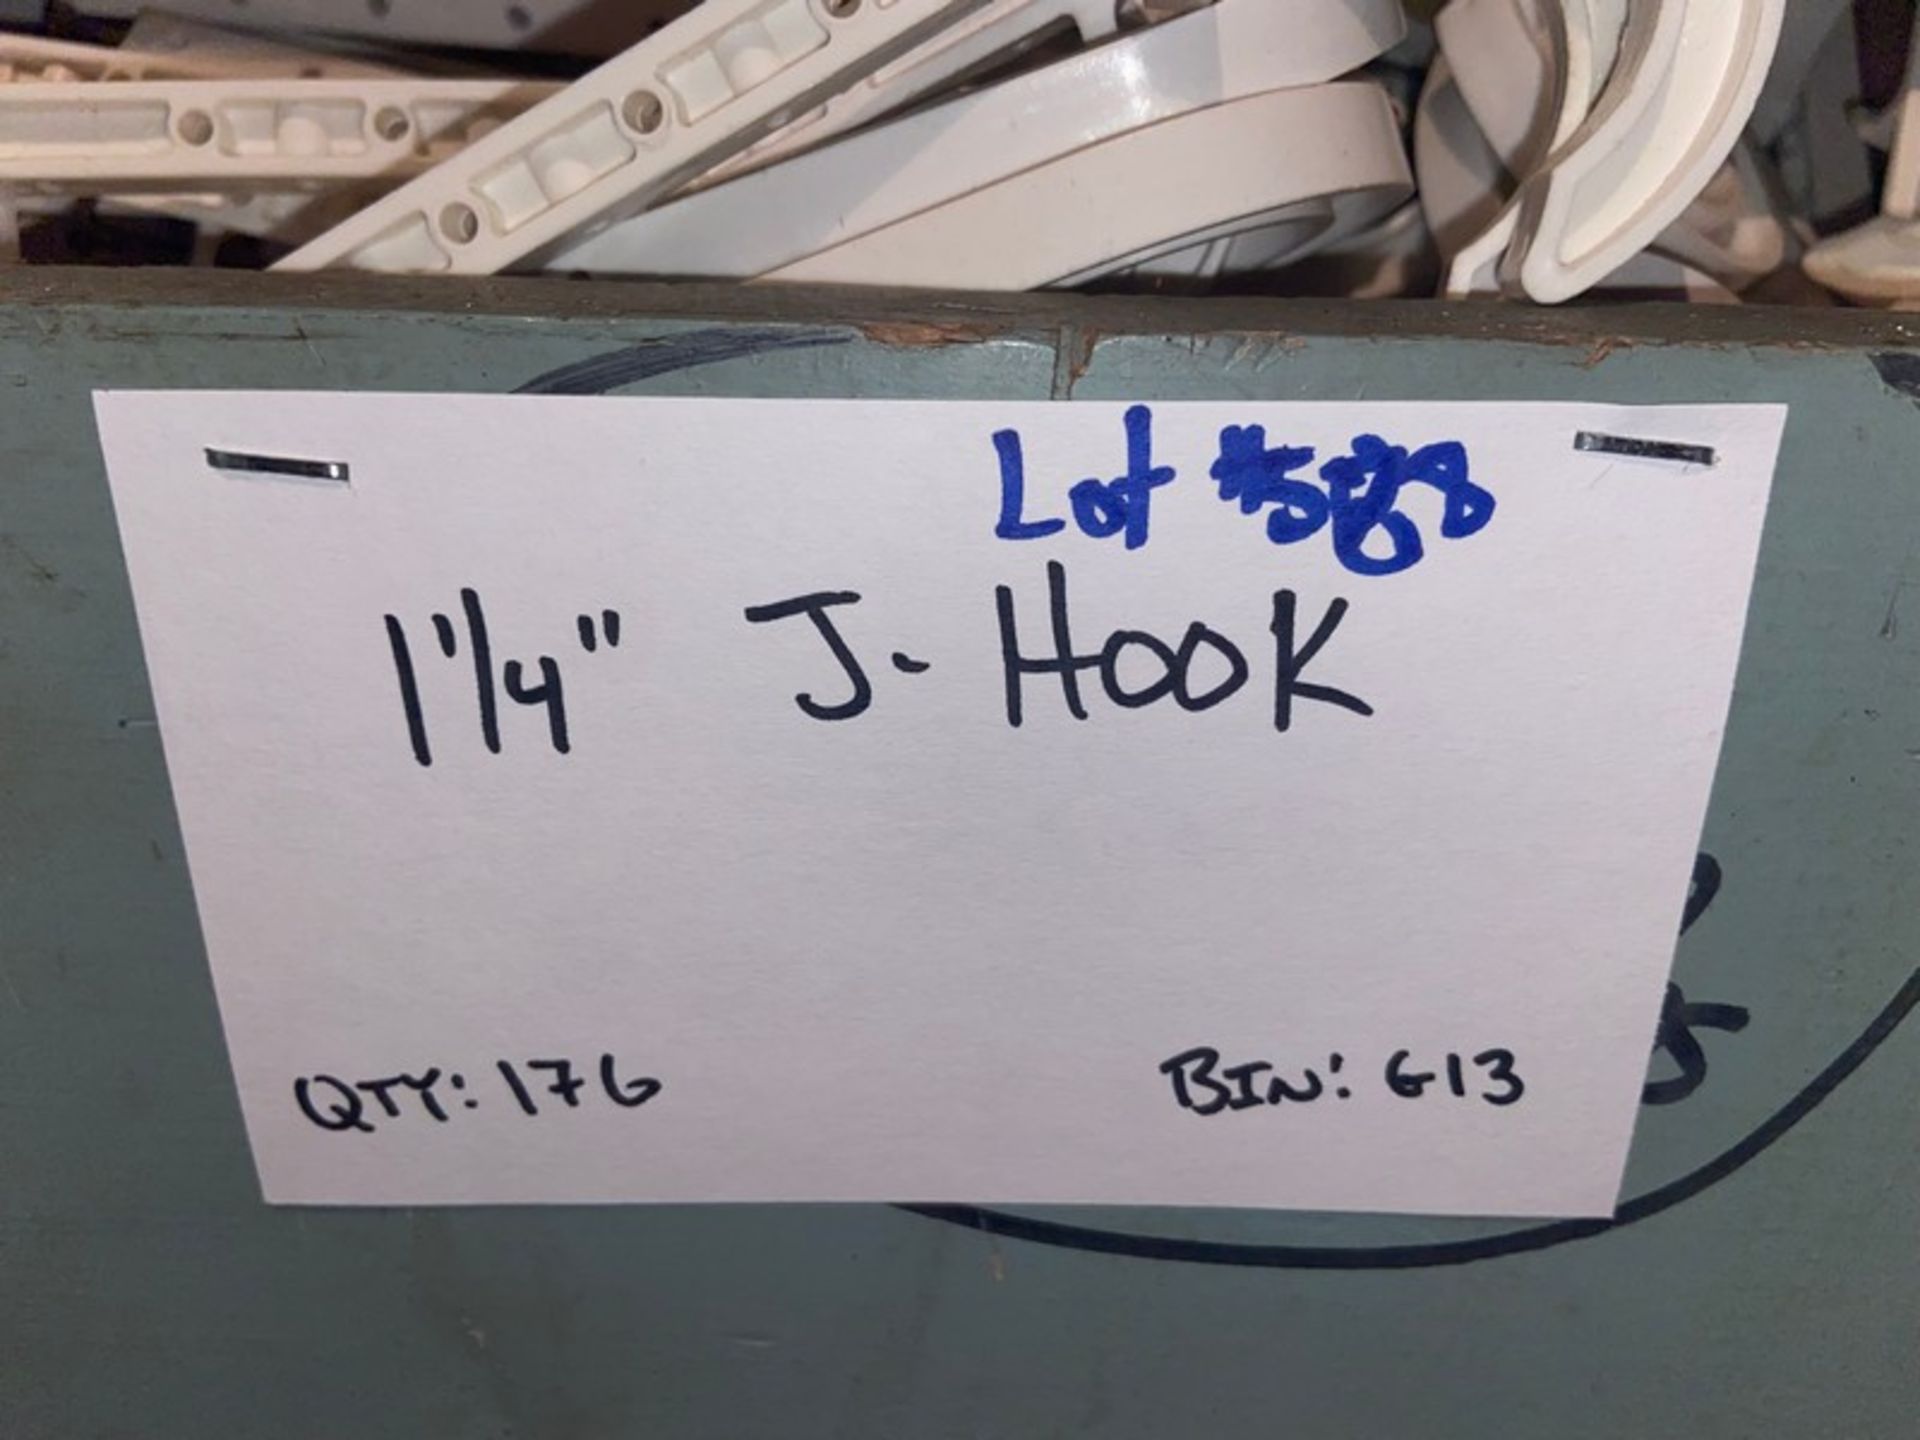 (176) 1 1/4” J-Hook (Bin:G13)(LOCATED IN MONROEVILLE, PA) - Bild 3 aus 4